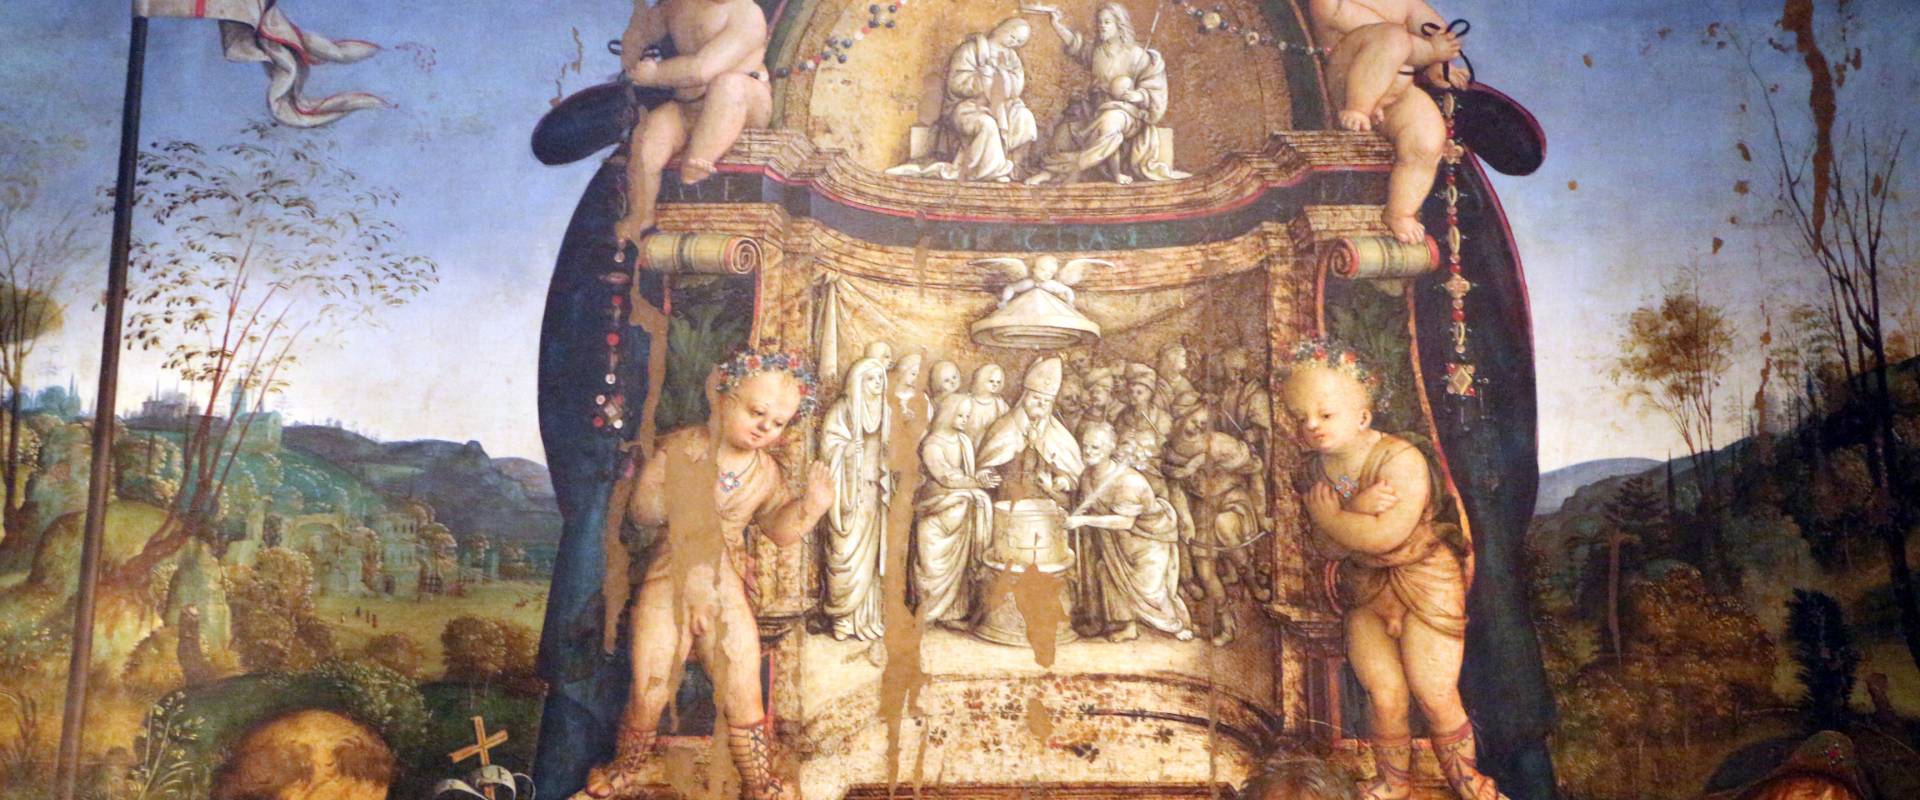 Amico aspertini, madonna in trono, santi e due devoti, 1504-05, dai ss. girolamo ed eustachio, 02,1 foto di Sailko